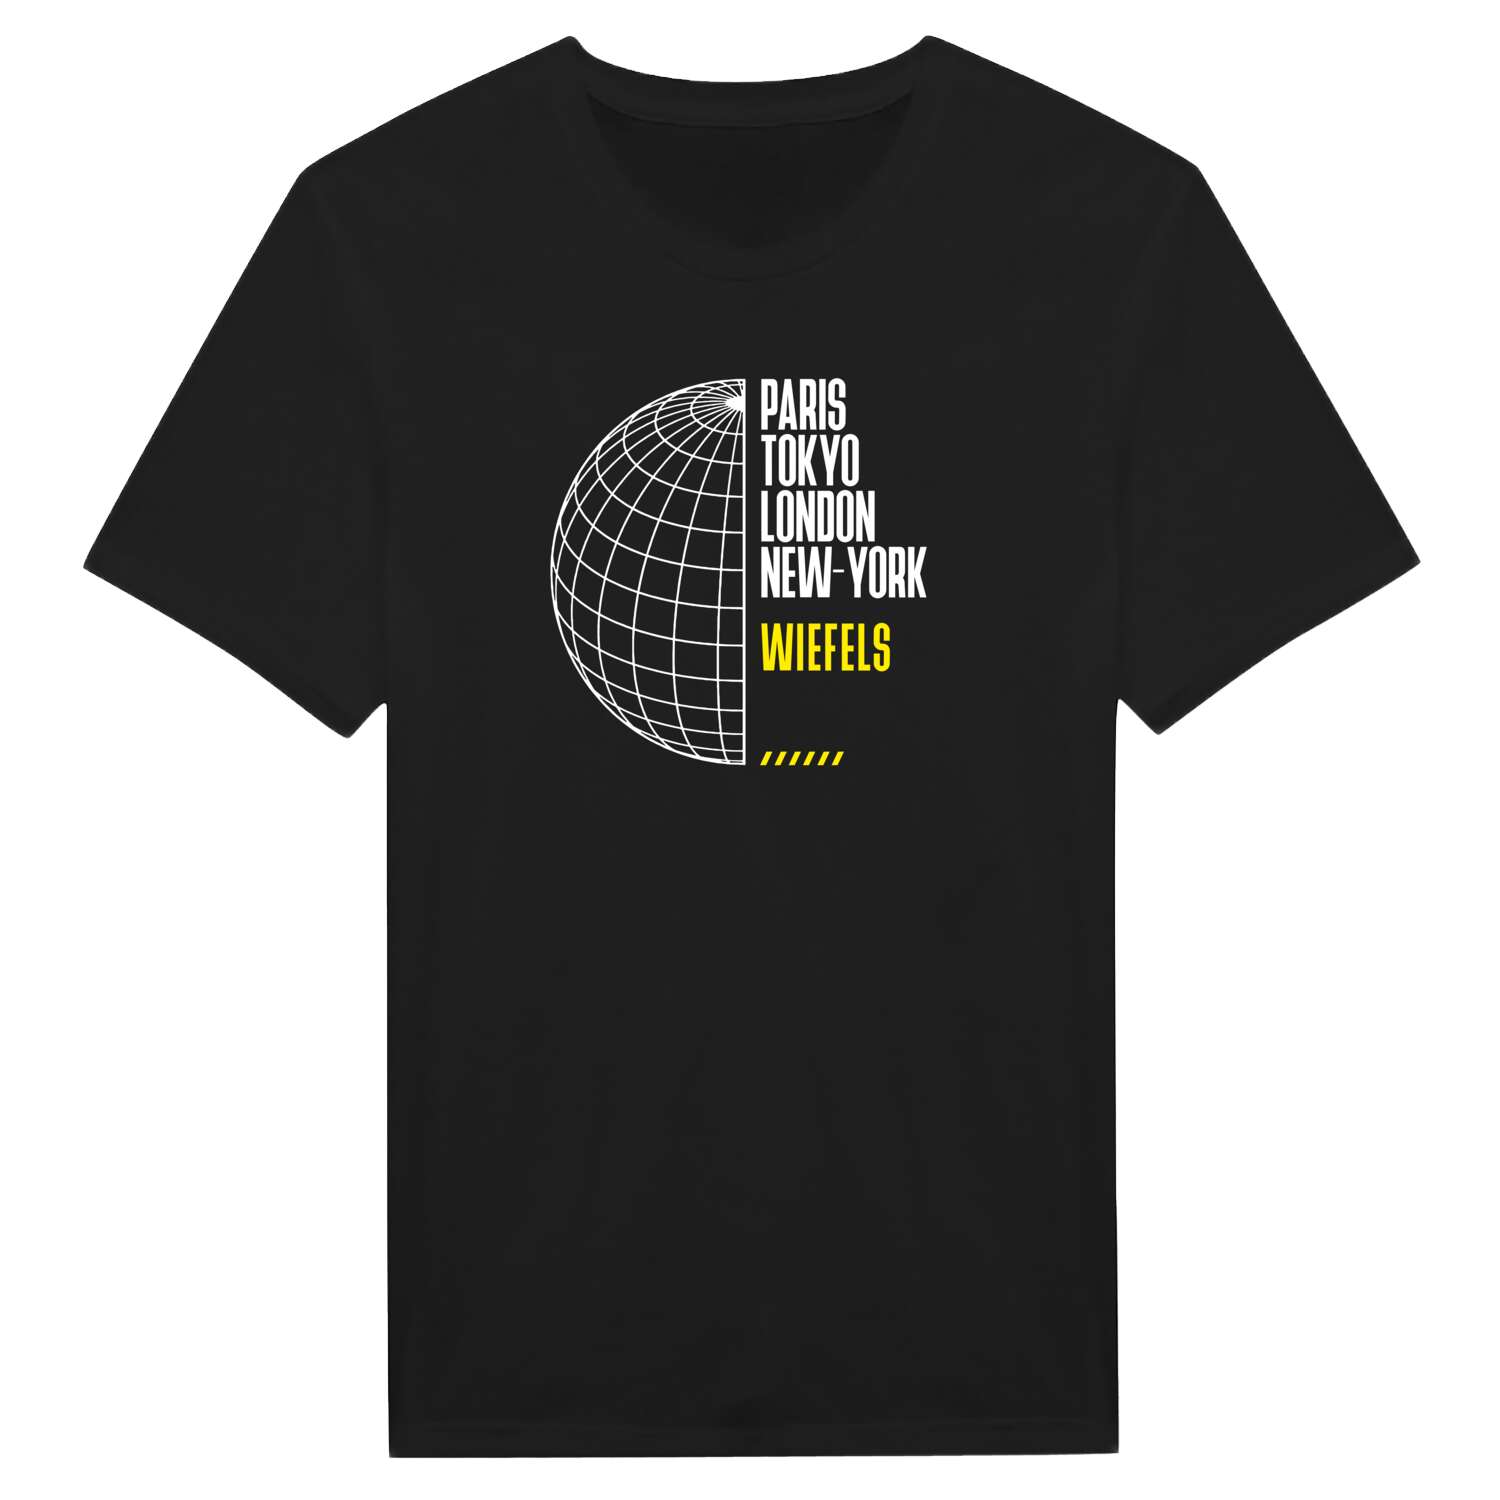 Wiefels T-Shirt »Paris Tokyo London«